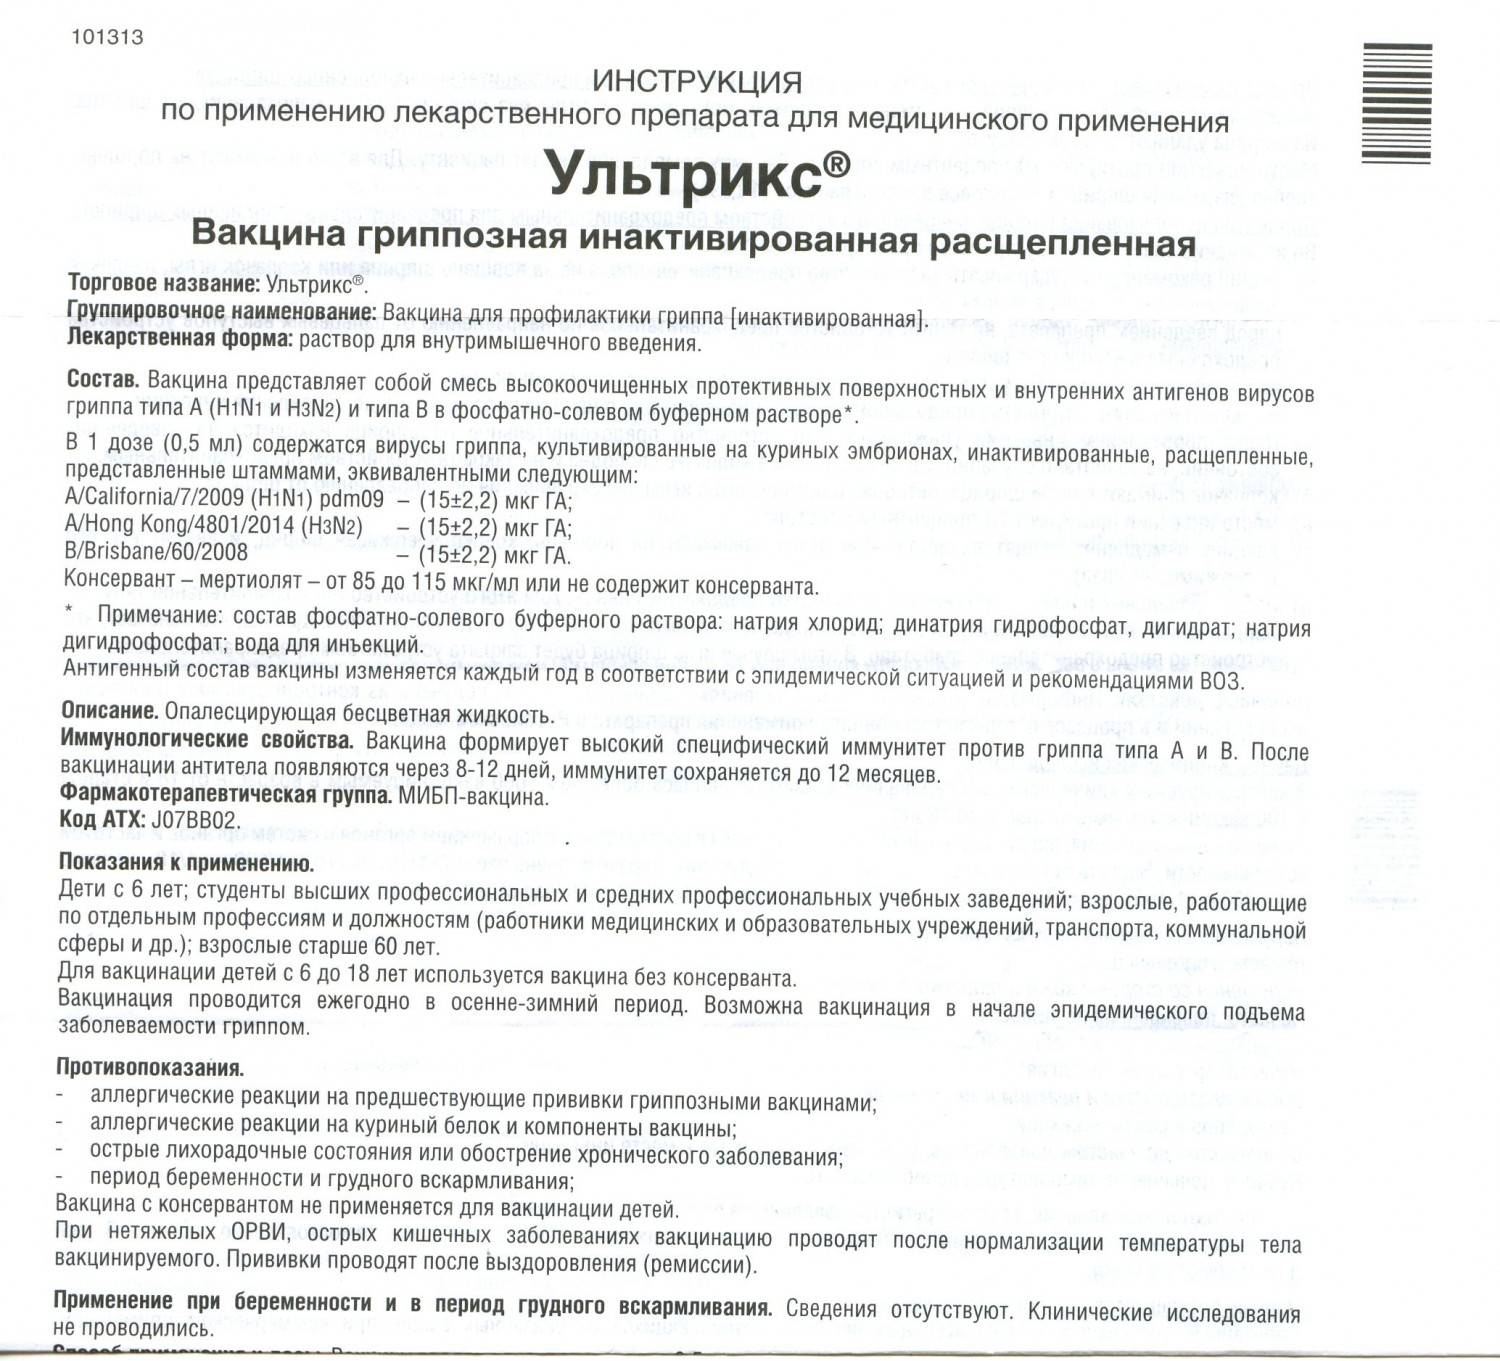 ✅ прививка от гриппа ультрикс инструкция по применению - стоматологиятут.рф